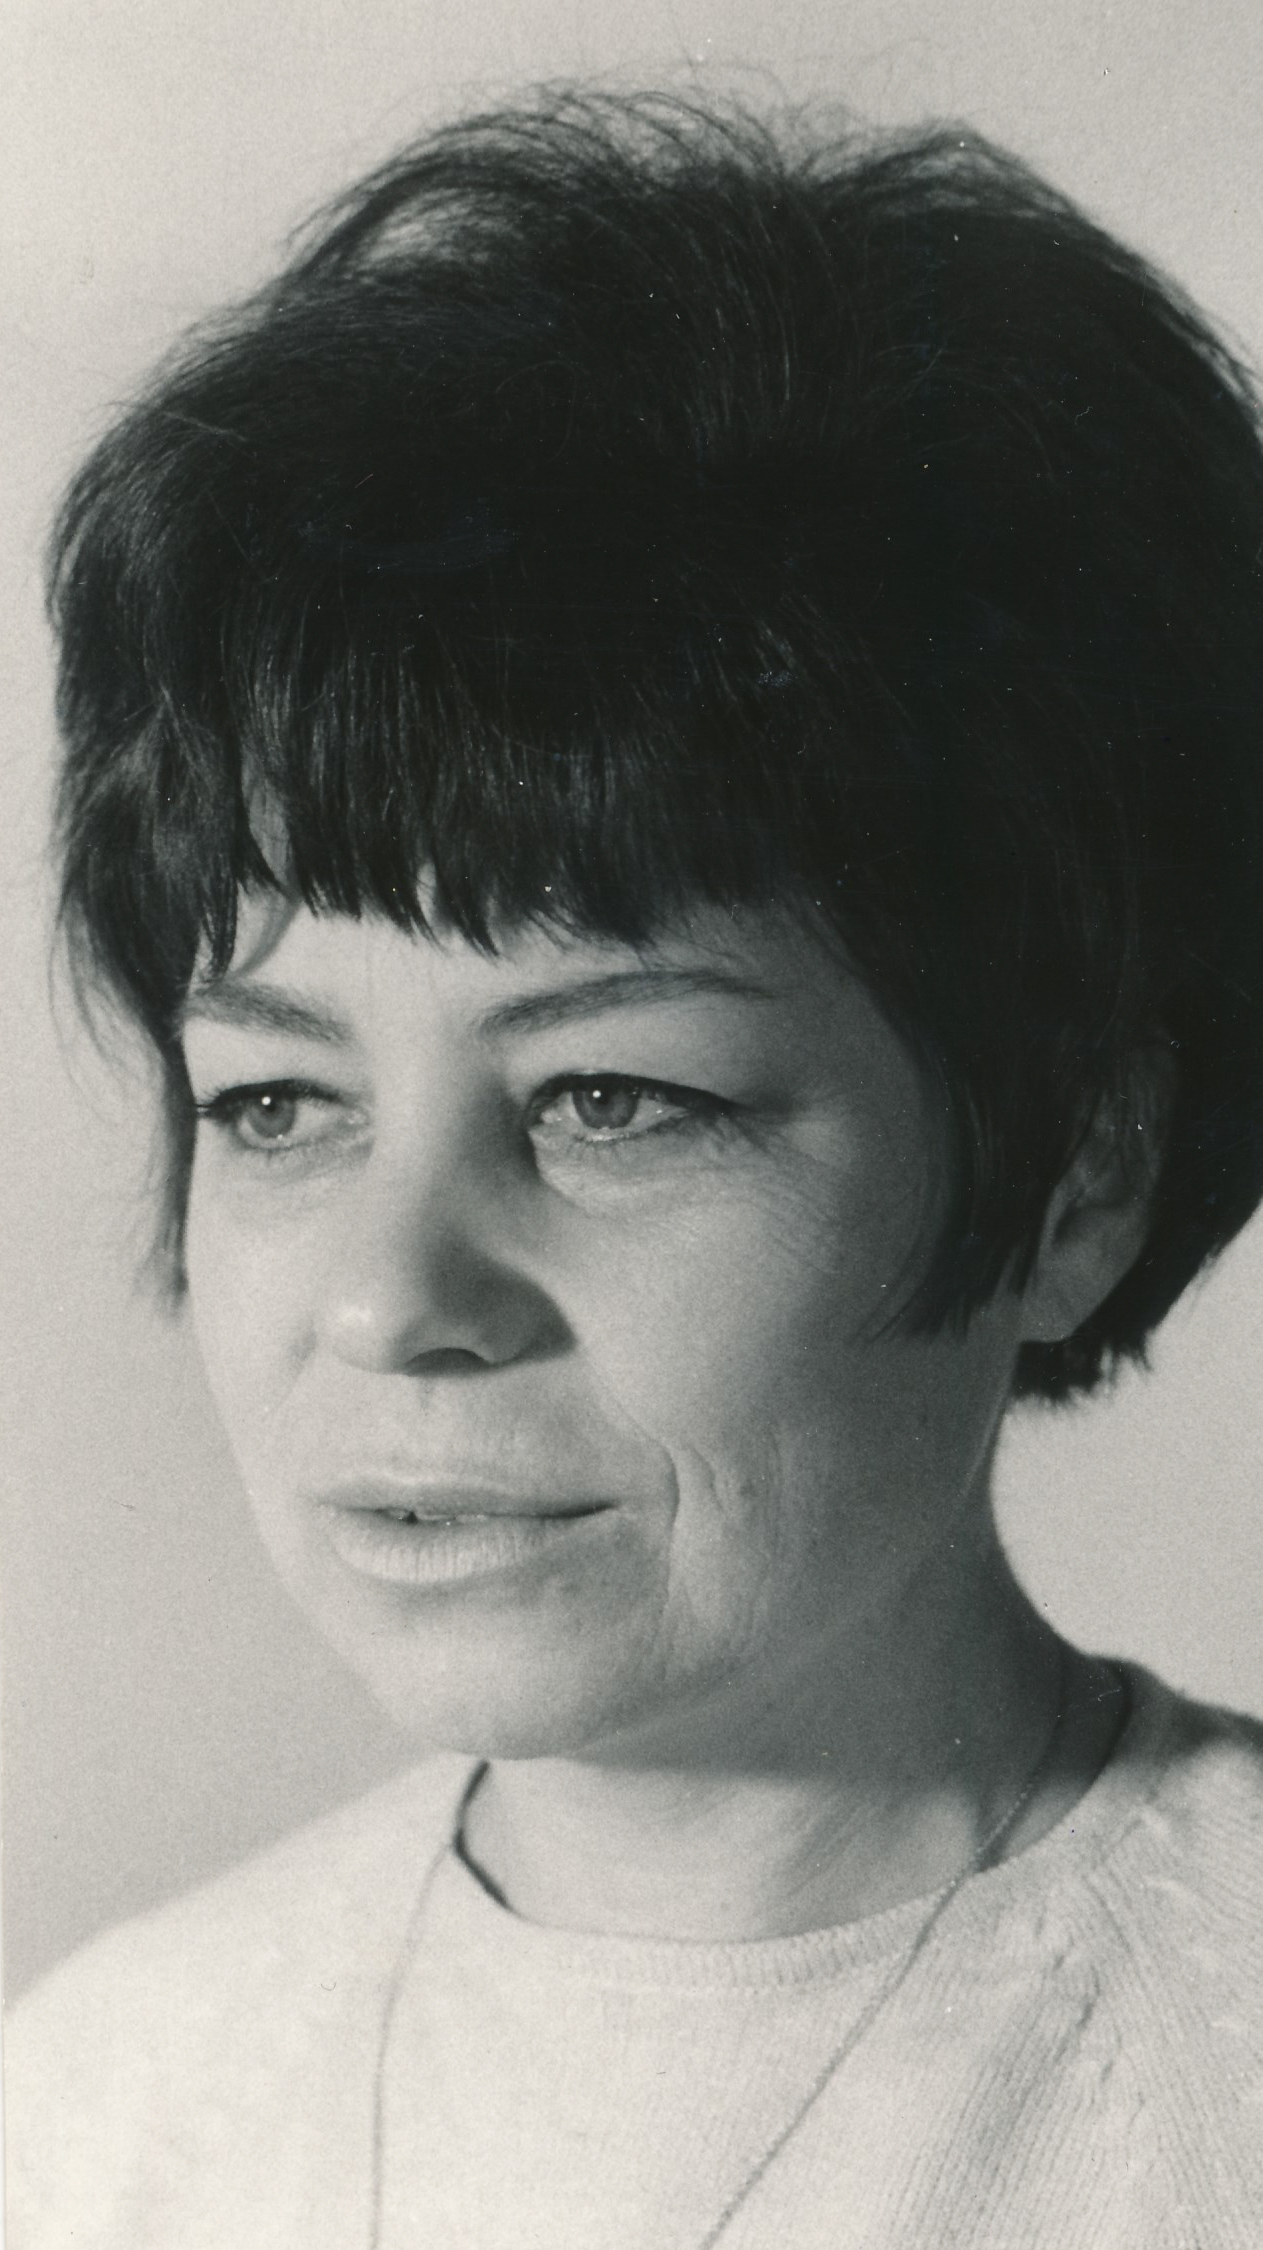 Květa Eretová in the 1960ss